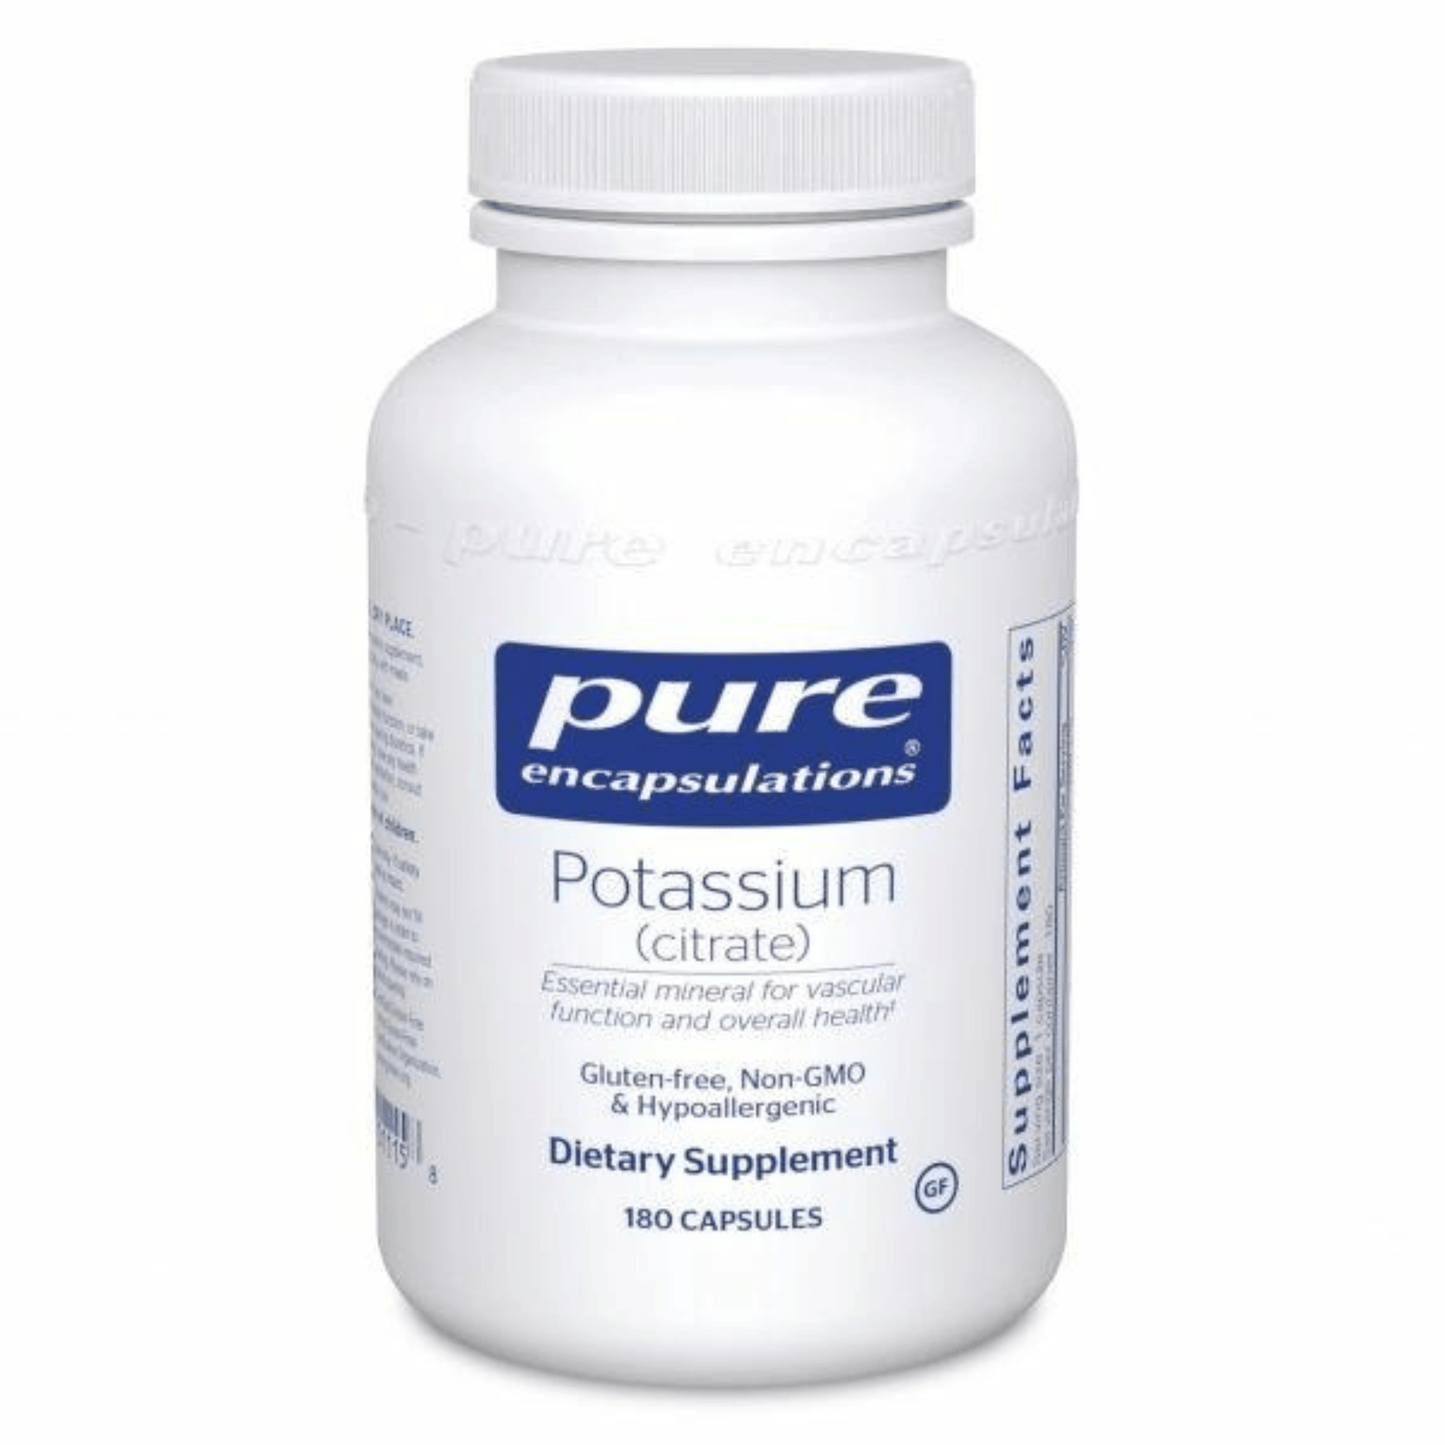 Primary Image of Potassium (citrate) Capsules